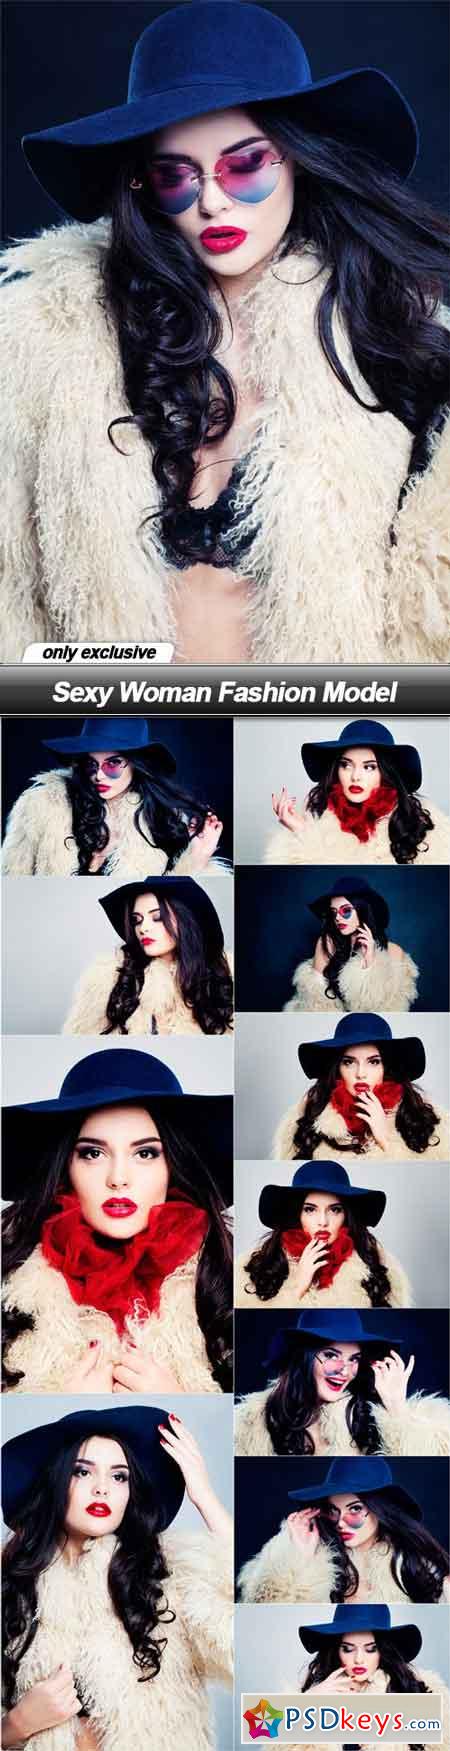 Sexy Woman Fashion Model - 12 UHQ JPEG